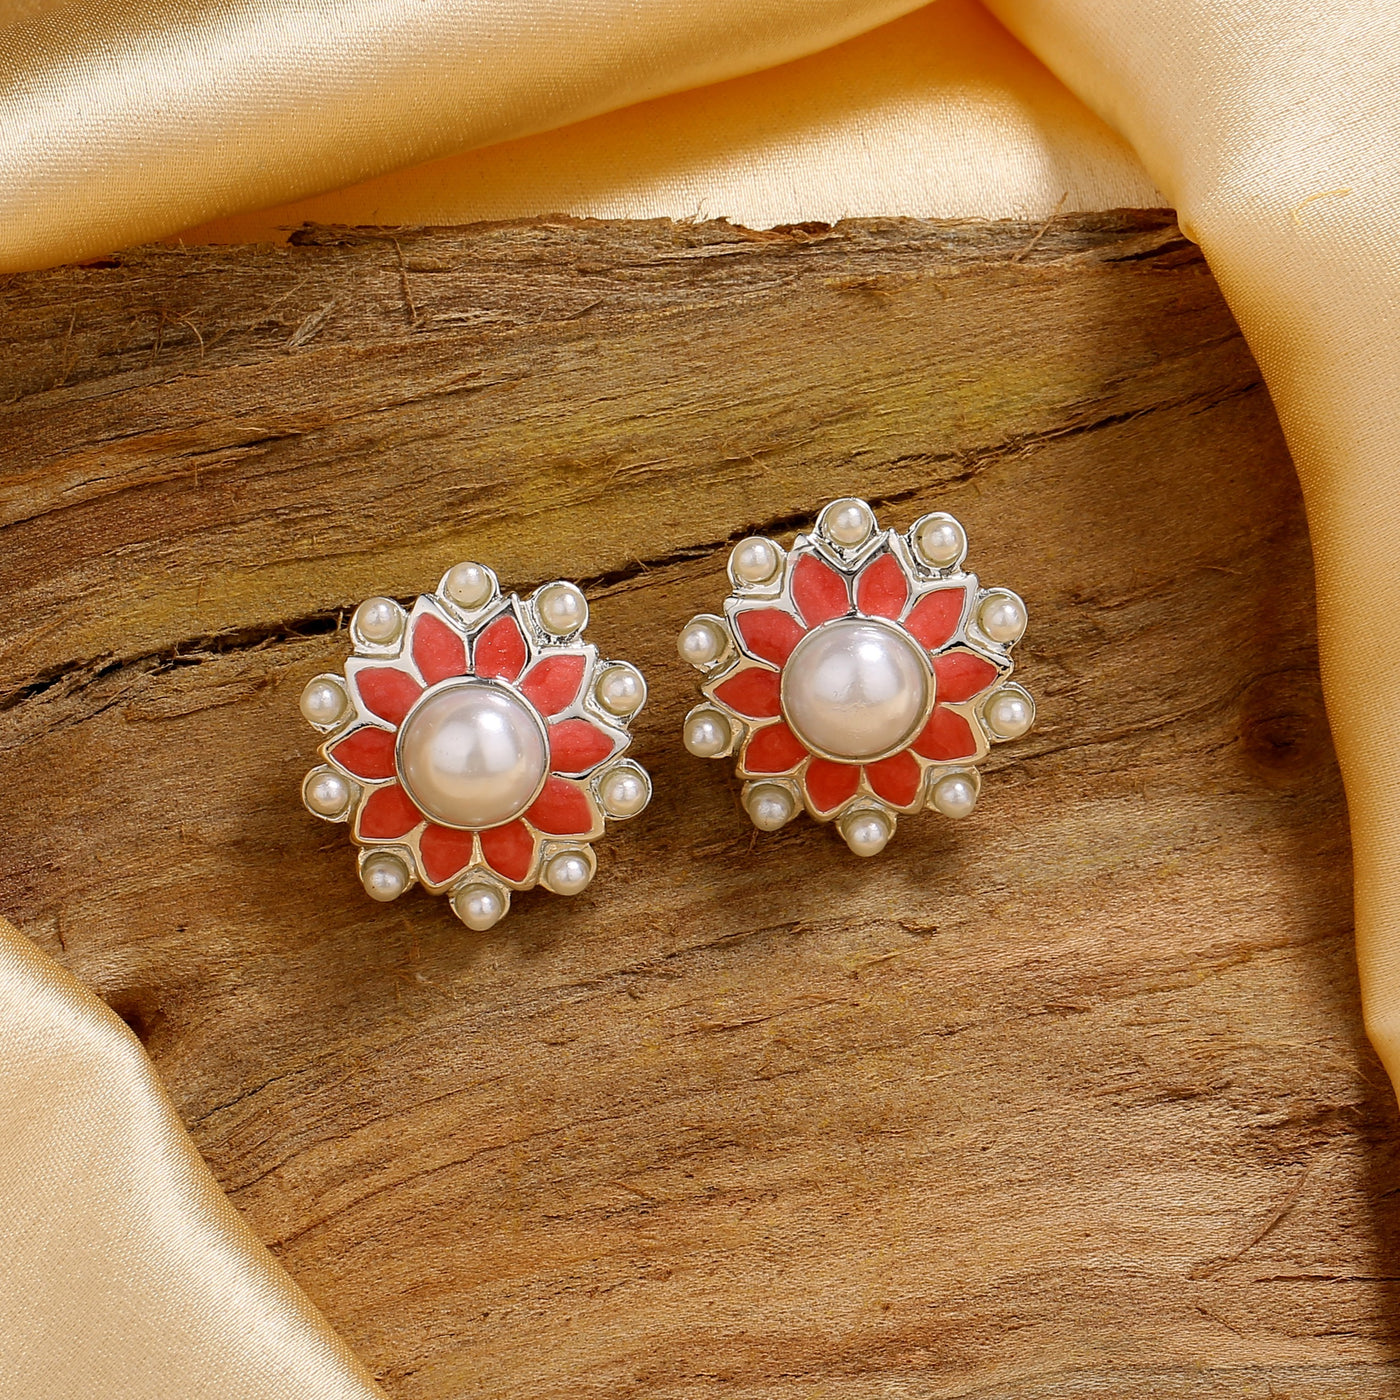 Estele Rhodium Plated Flower Meenakari Pearl Stud Earrings with Pink Enamel for Women